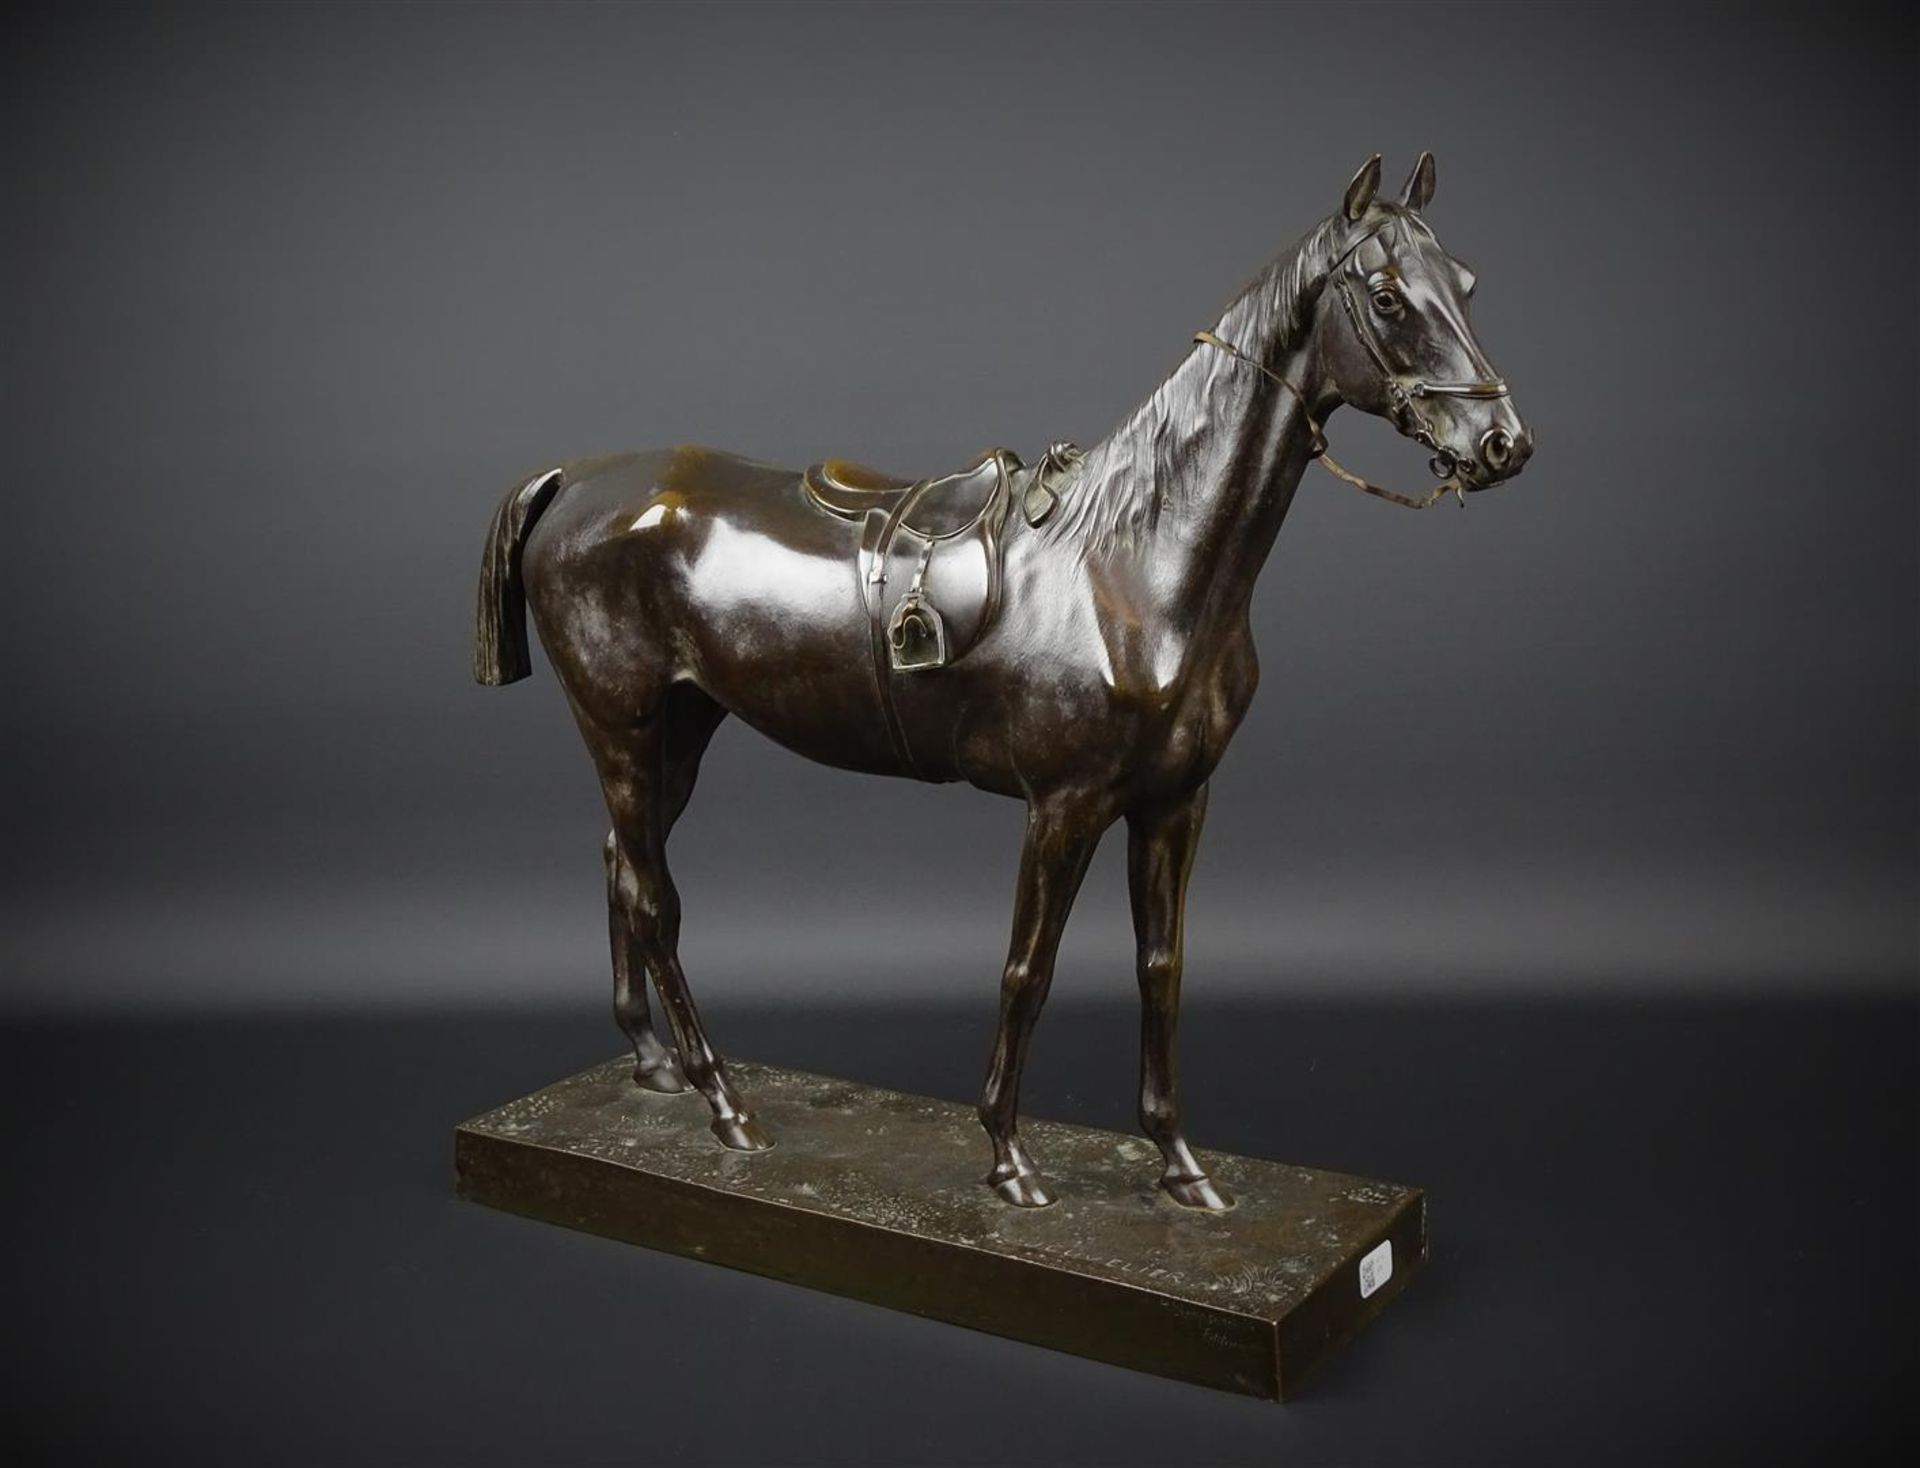 Joseph Cuveliergepatineerde bronzen sculptuur met voorstelling van staand paard met zadel,